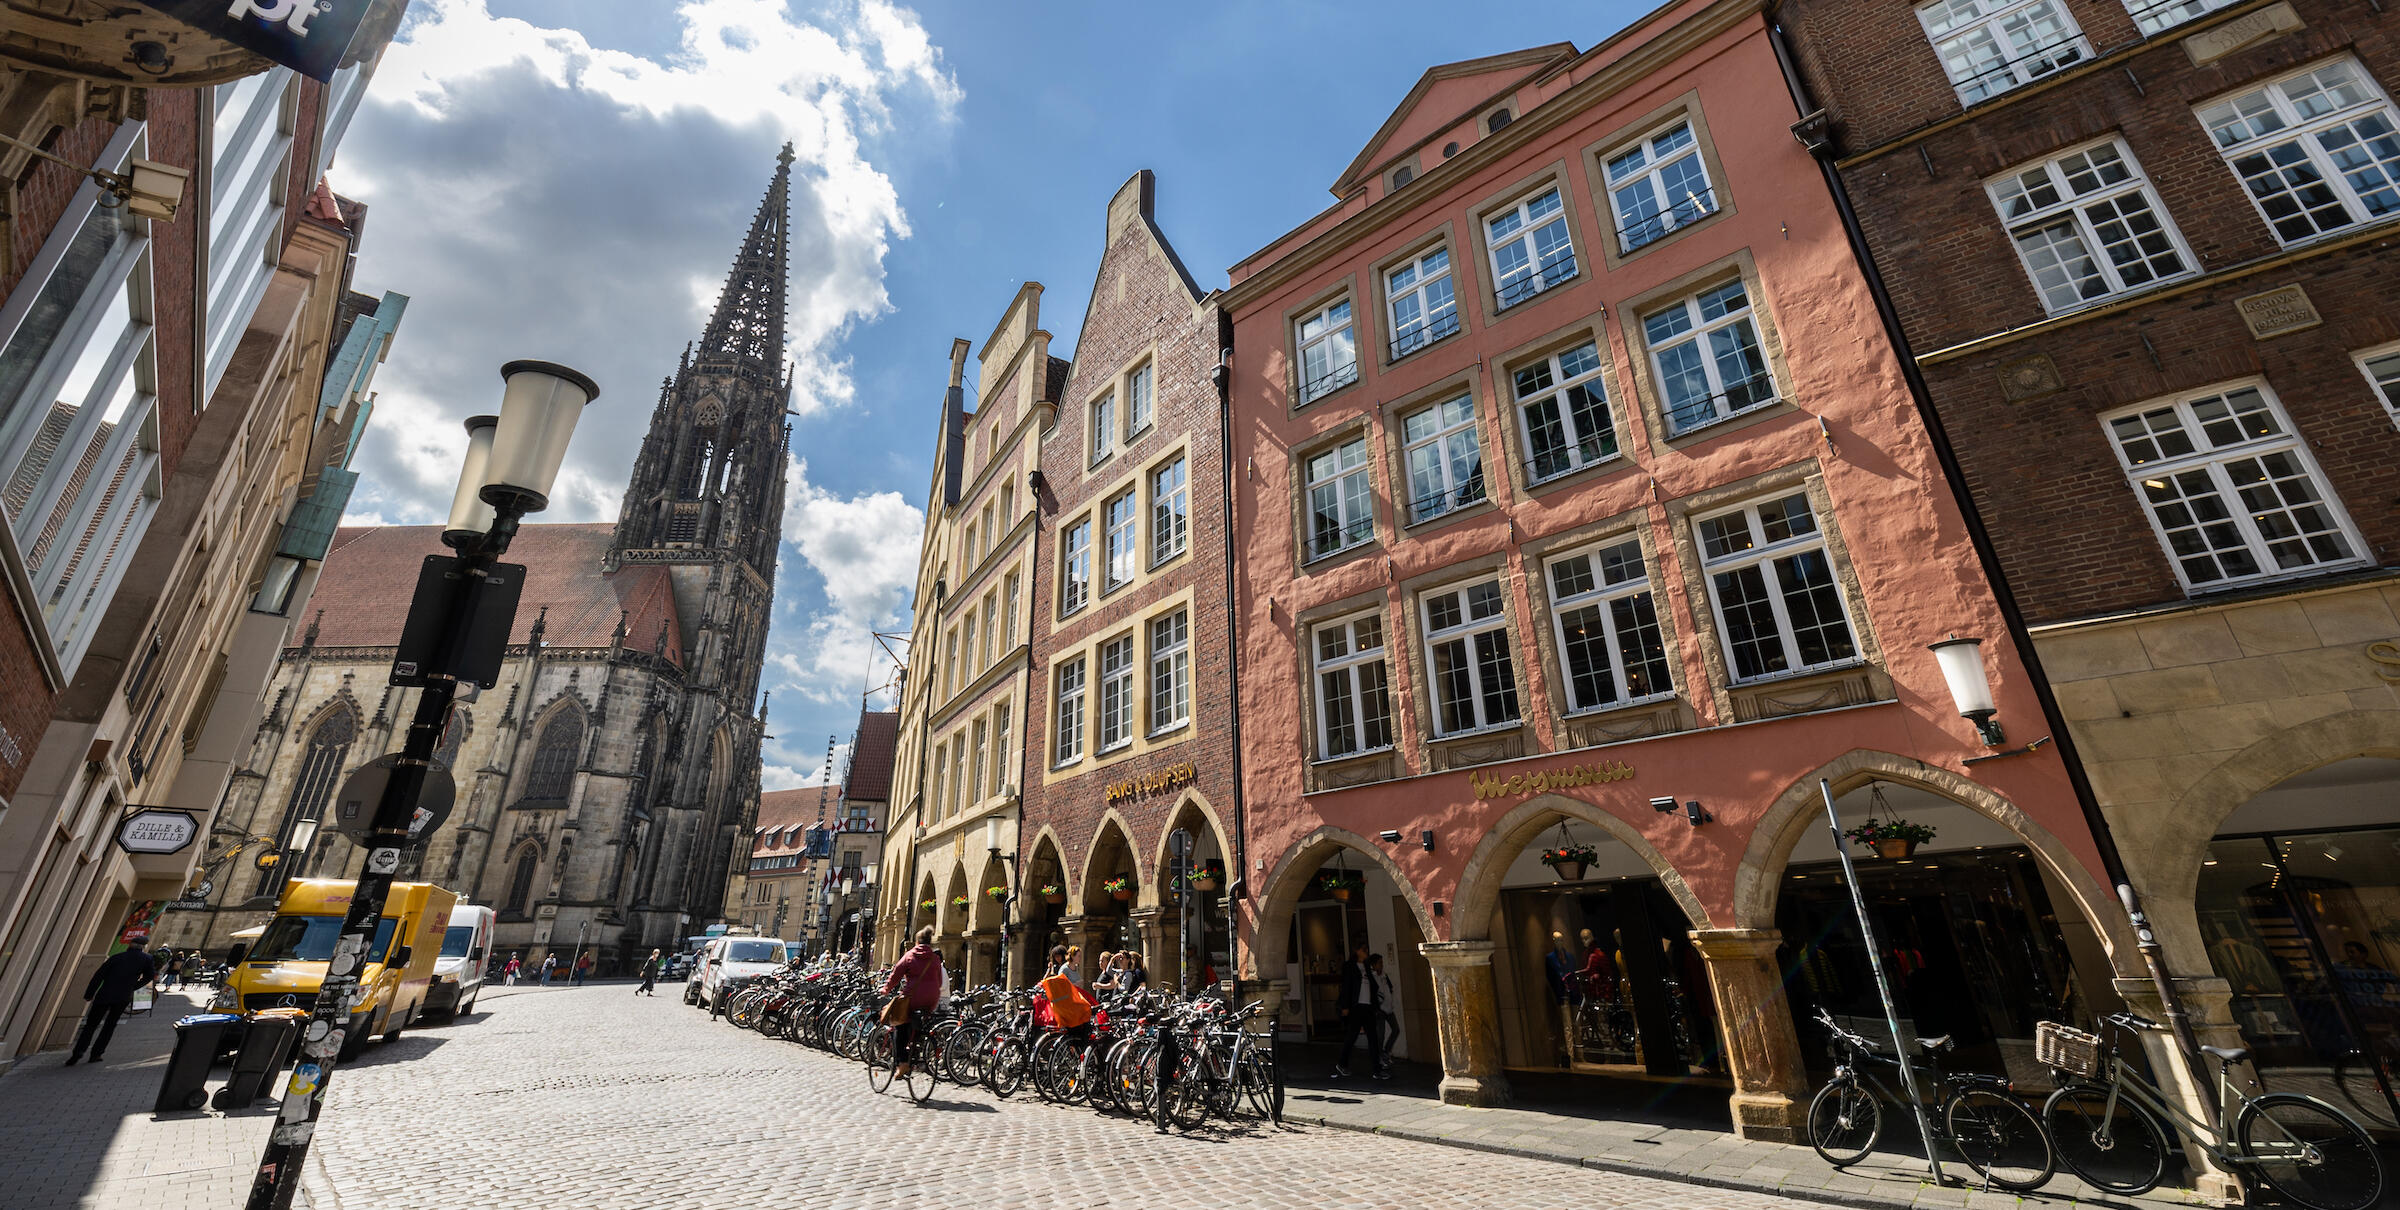 Der Drubbel in Münsters historischer Altstadt